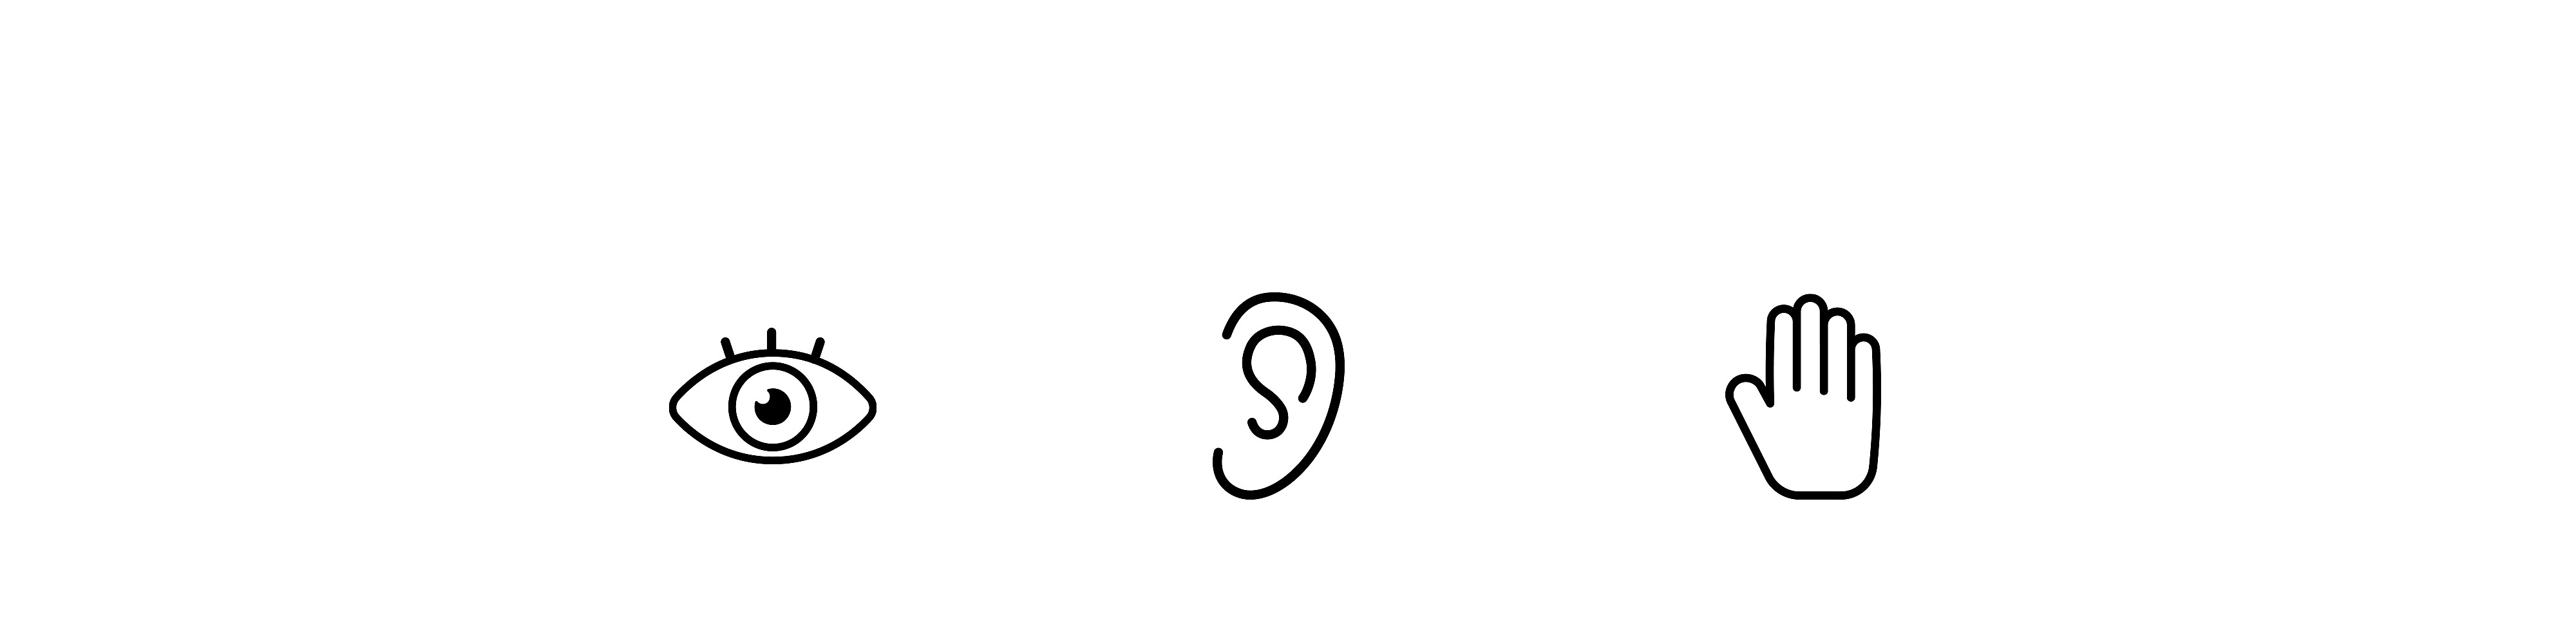 Drei Symbole nebeneinander, links ein Auge, in der Mitte ein Ohr und rechts eine Hand